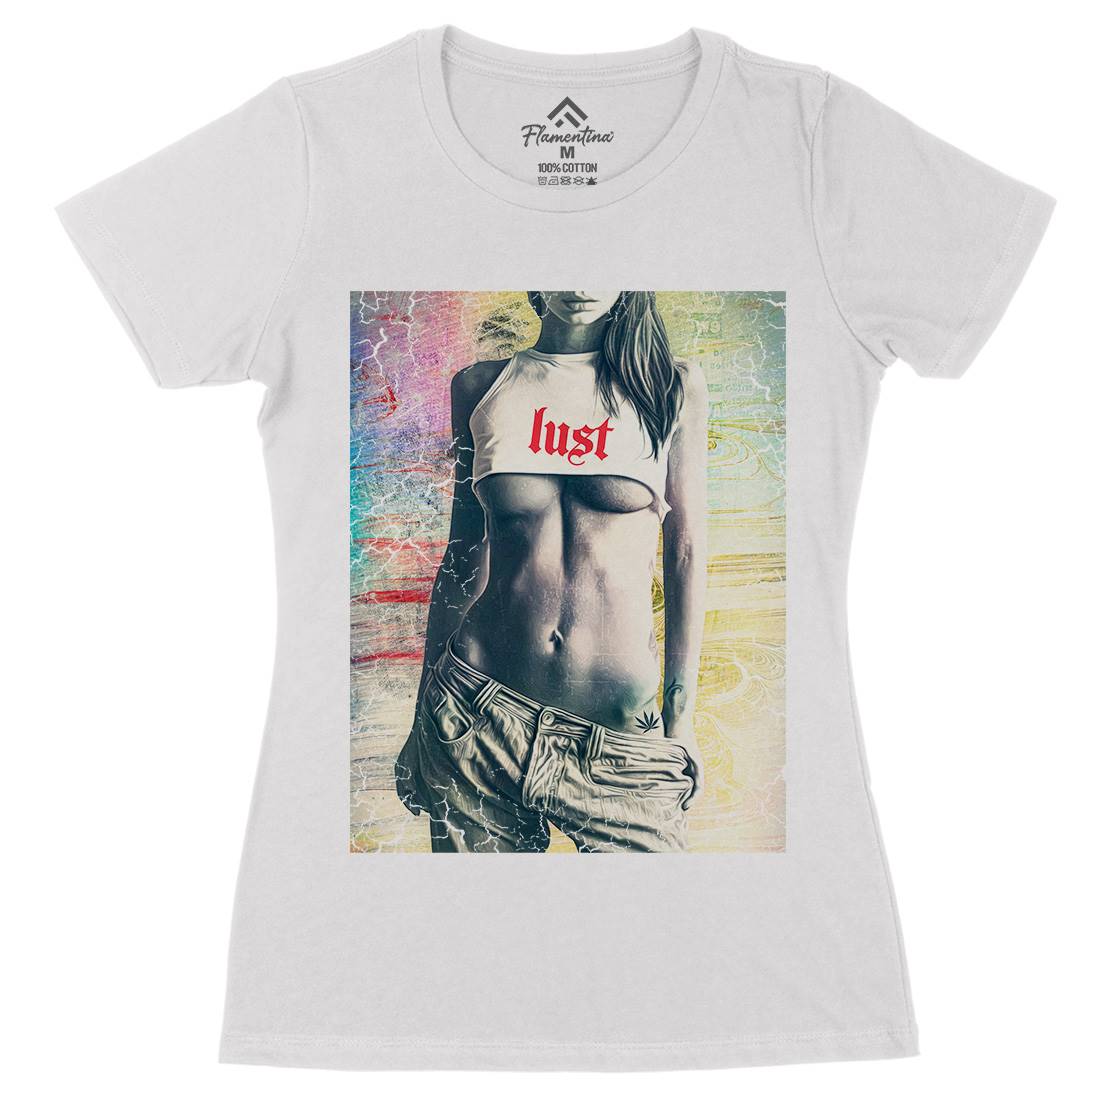 Lust Womens Organic Crew Neck T-Shirt Art A872